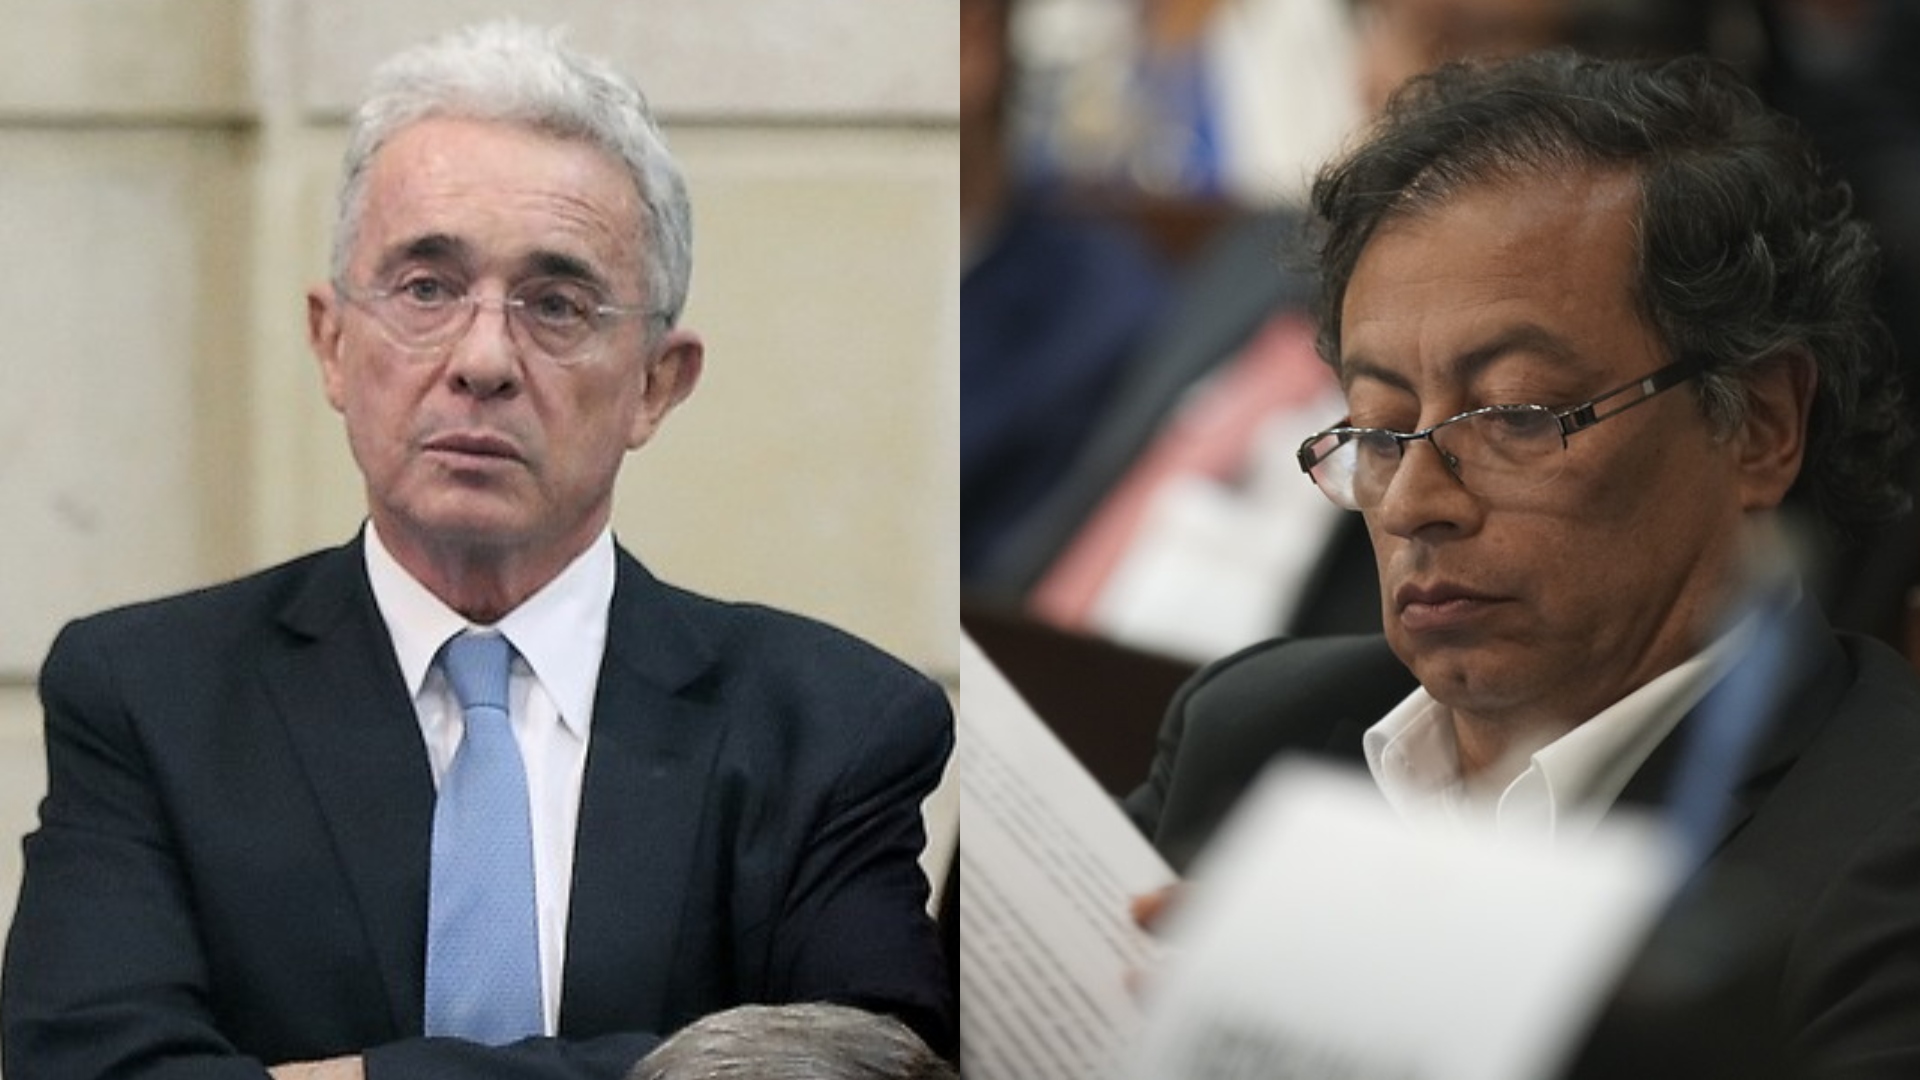 Álvaro Uribe criticó a Gustavo Petro por su propuesta pensional: “No se ponga tan serio para decir mentiras”